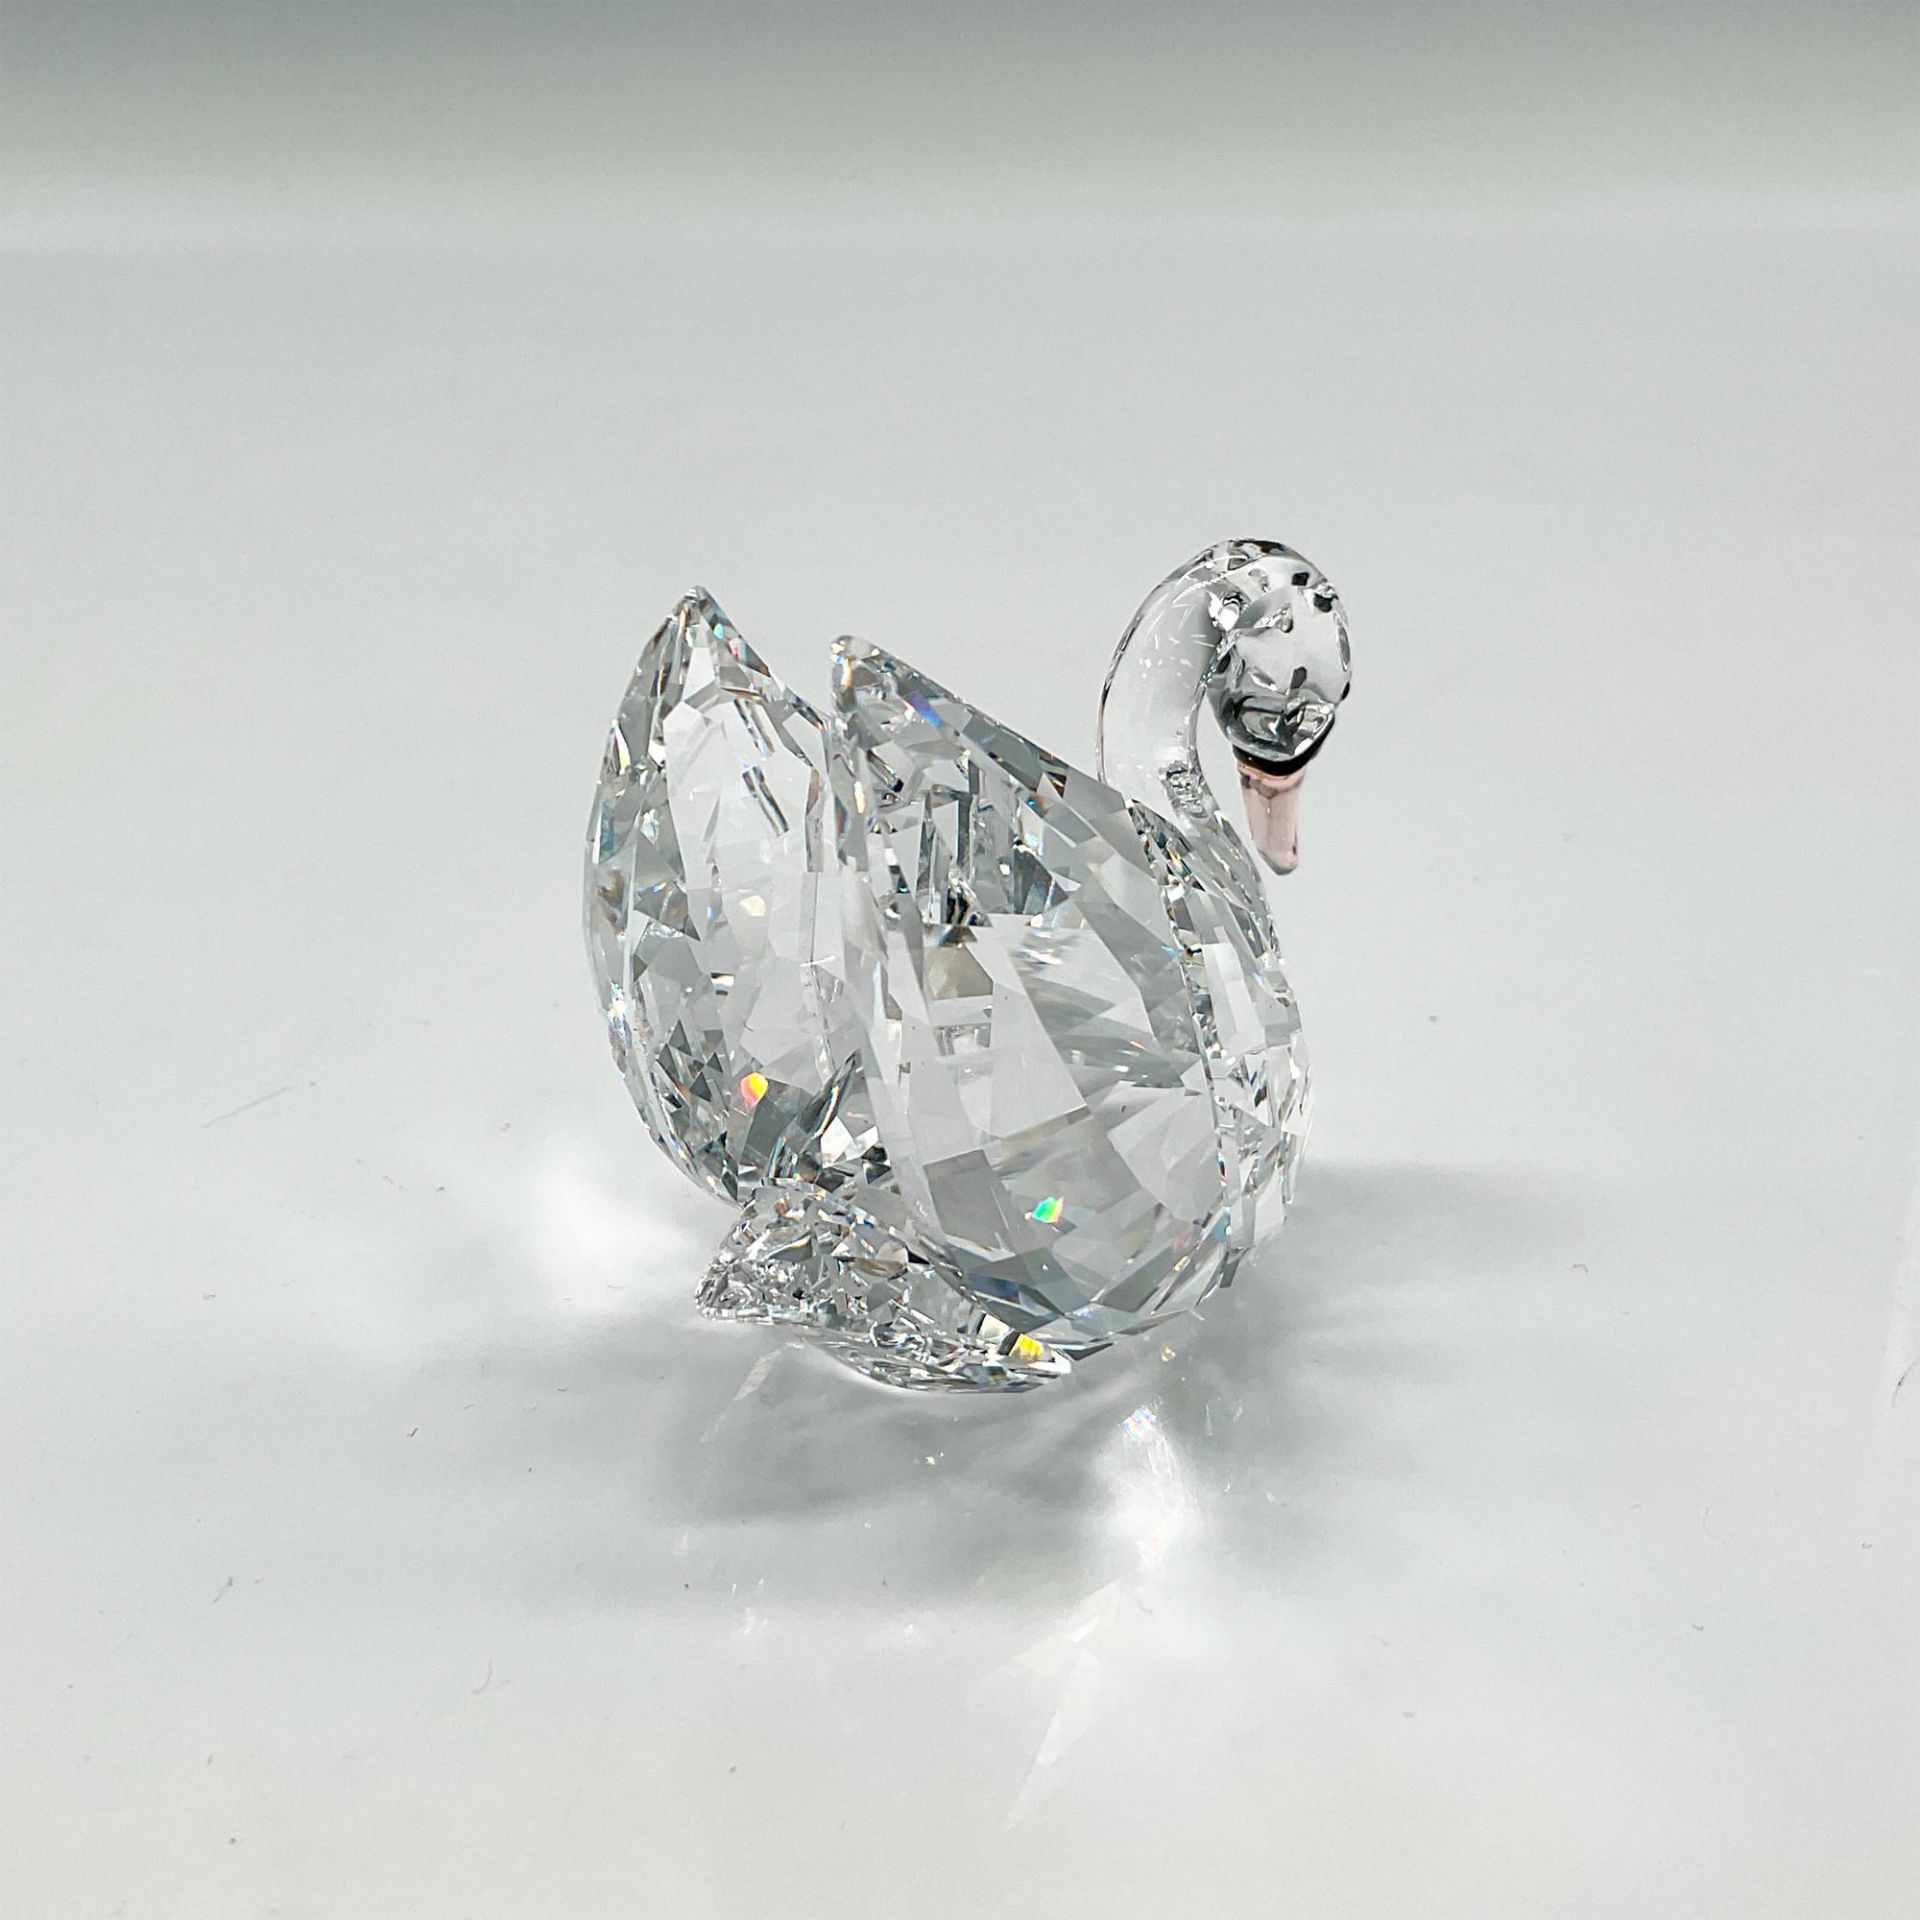 Swarovski Crystal Figurine, Medium Swan - Image 2 of 4